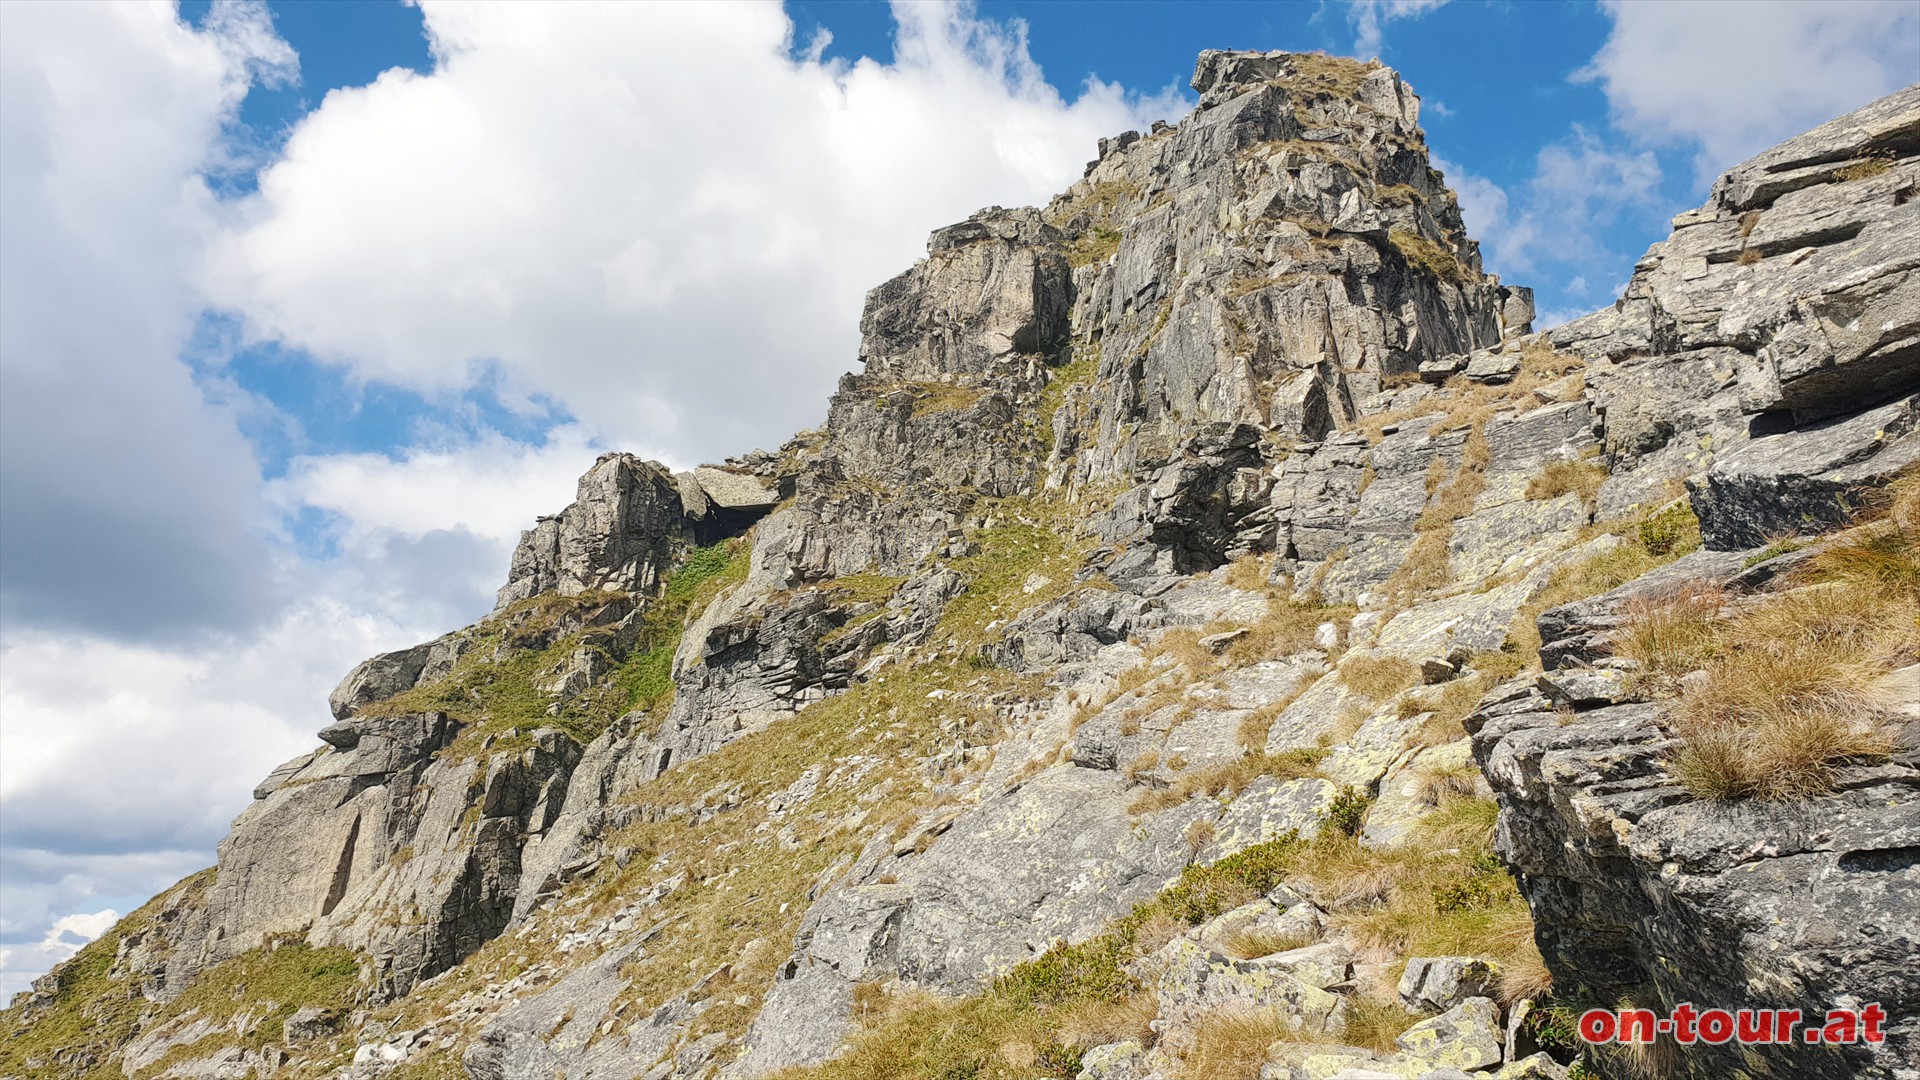 Tierscharte; beim Aufstieg zum Sonntagkogel gibt es eine Kletterpassage (II-III).